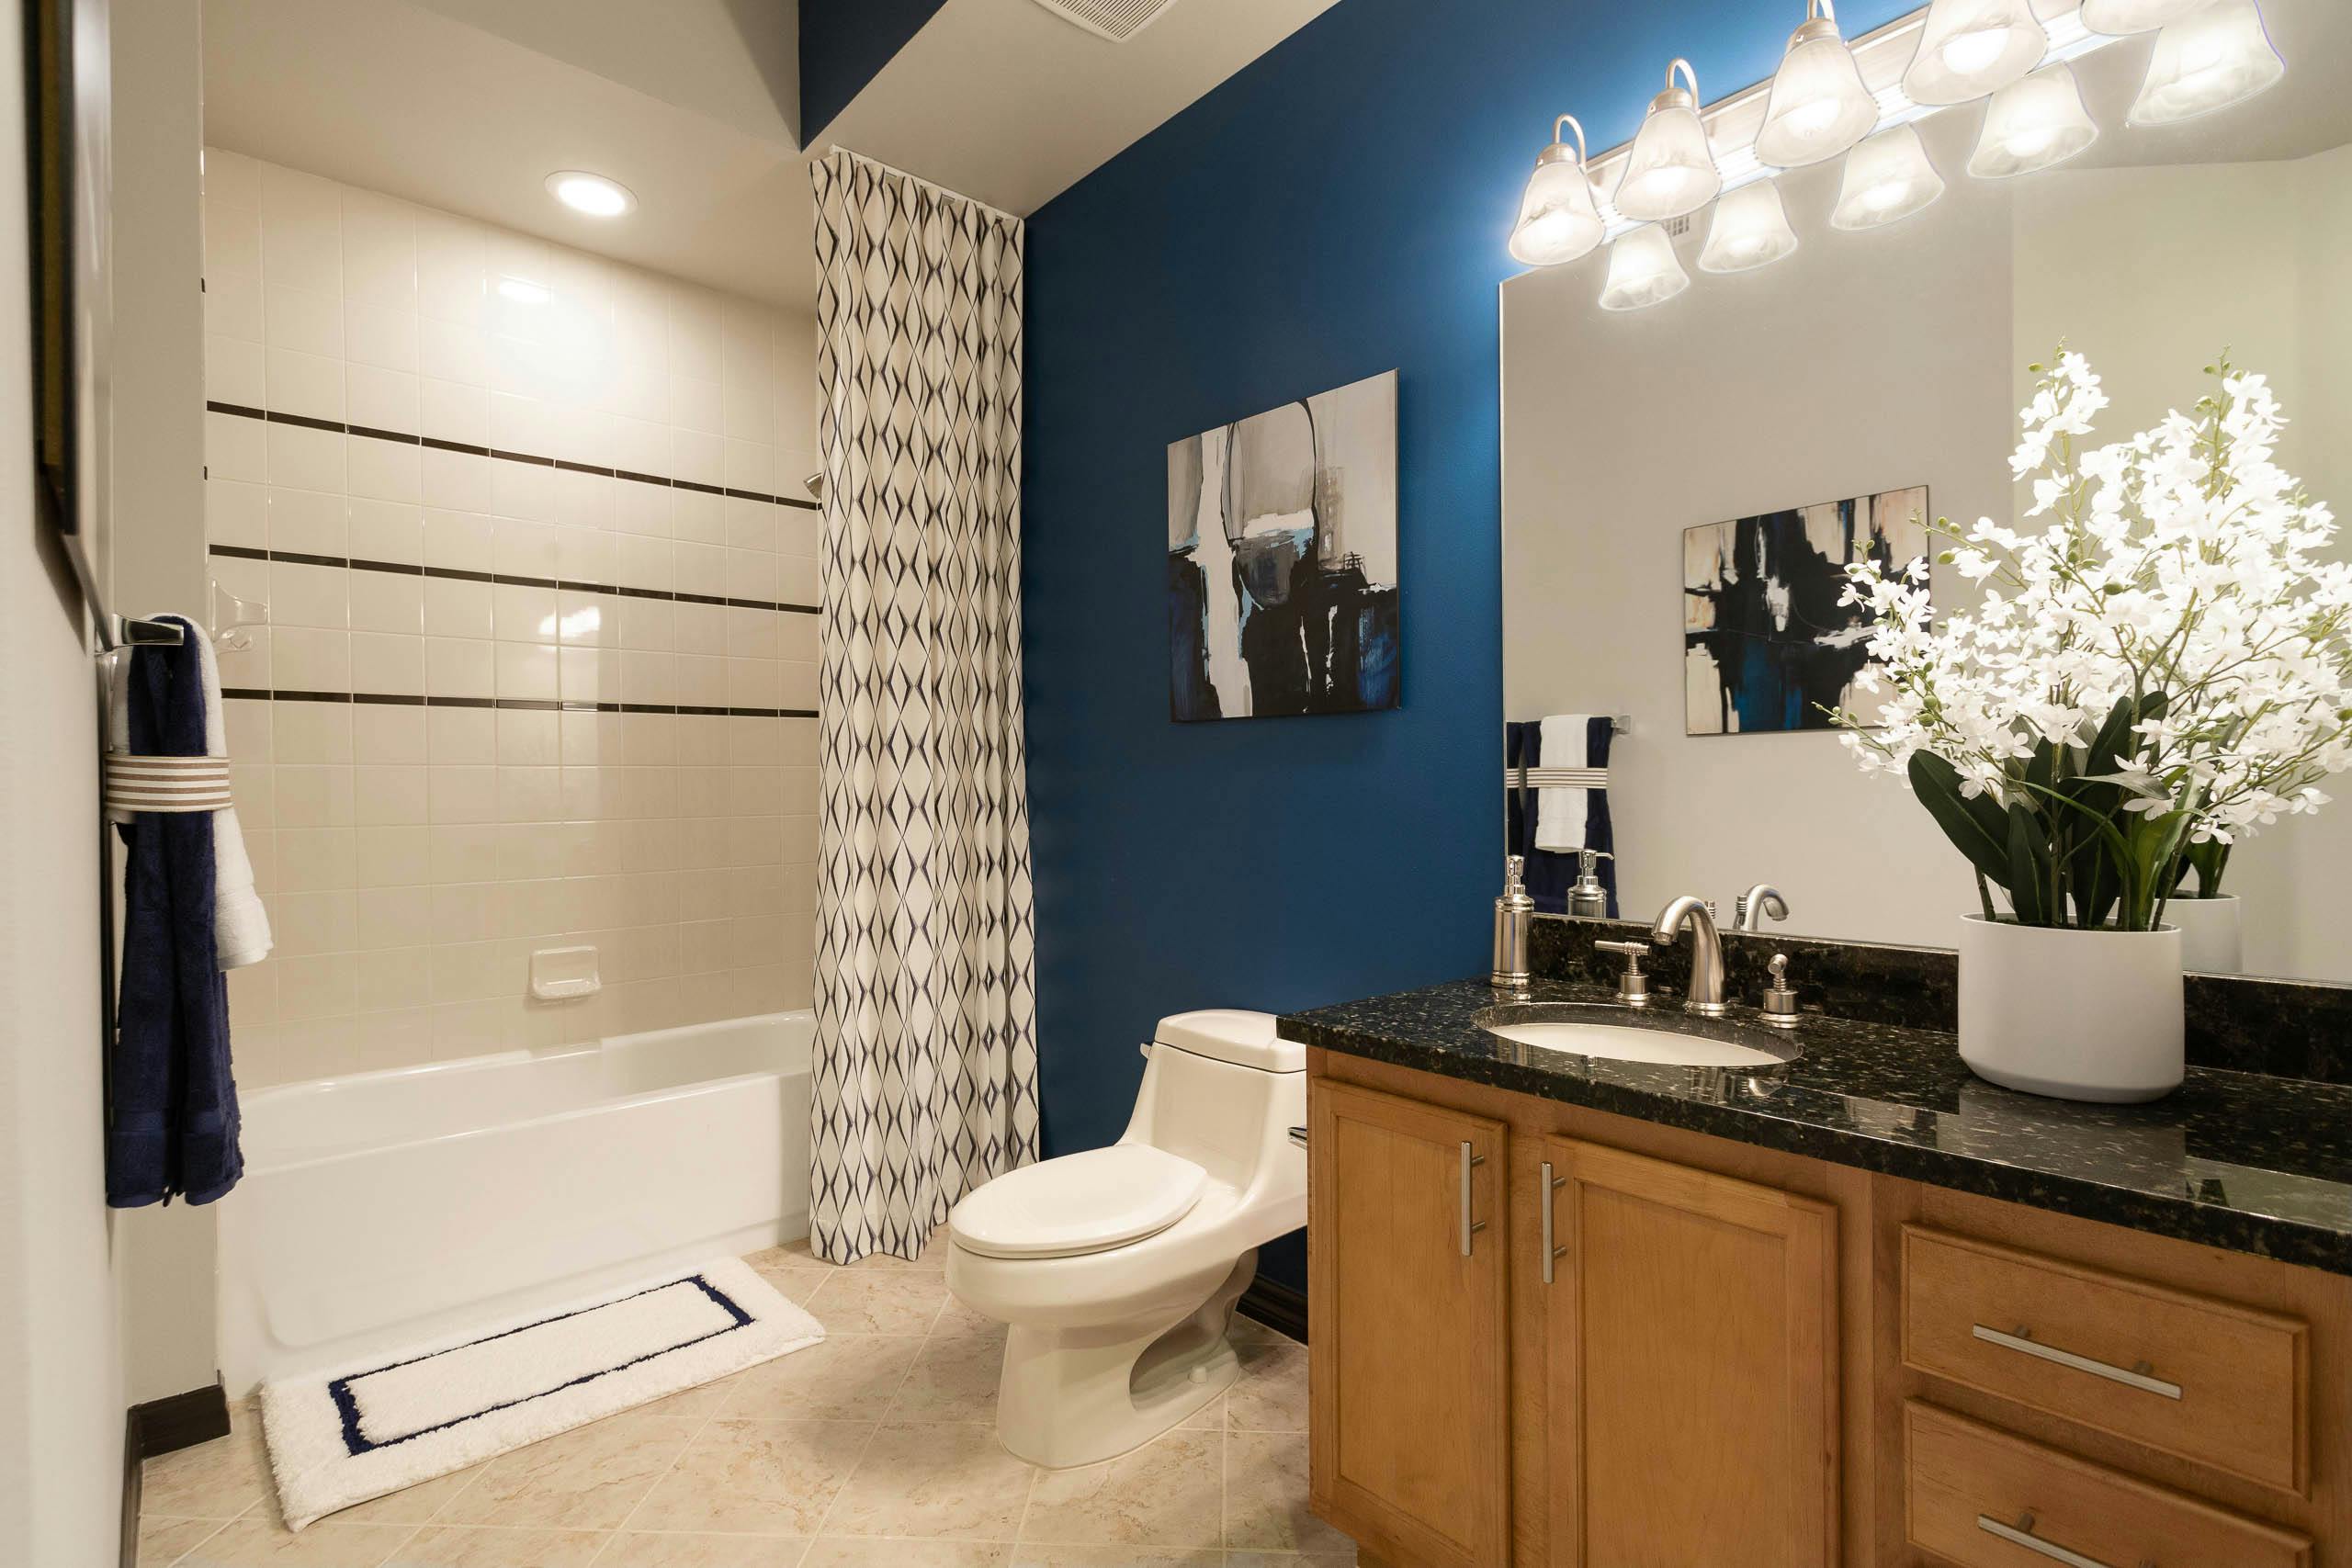 Al Bathroom Decor Ideas Amli, Apartment Bathroom Ideas Shower Curtain